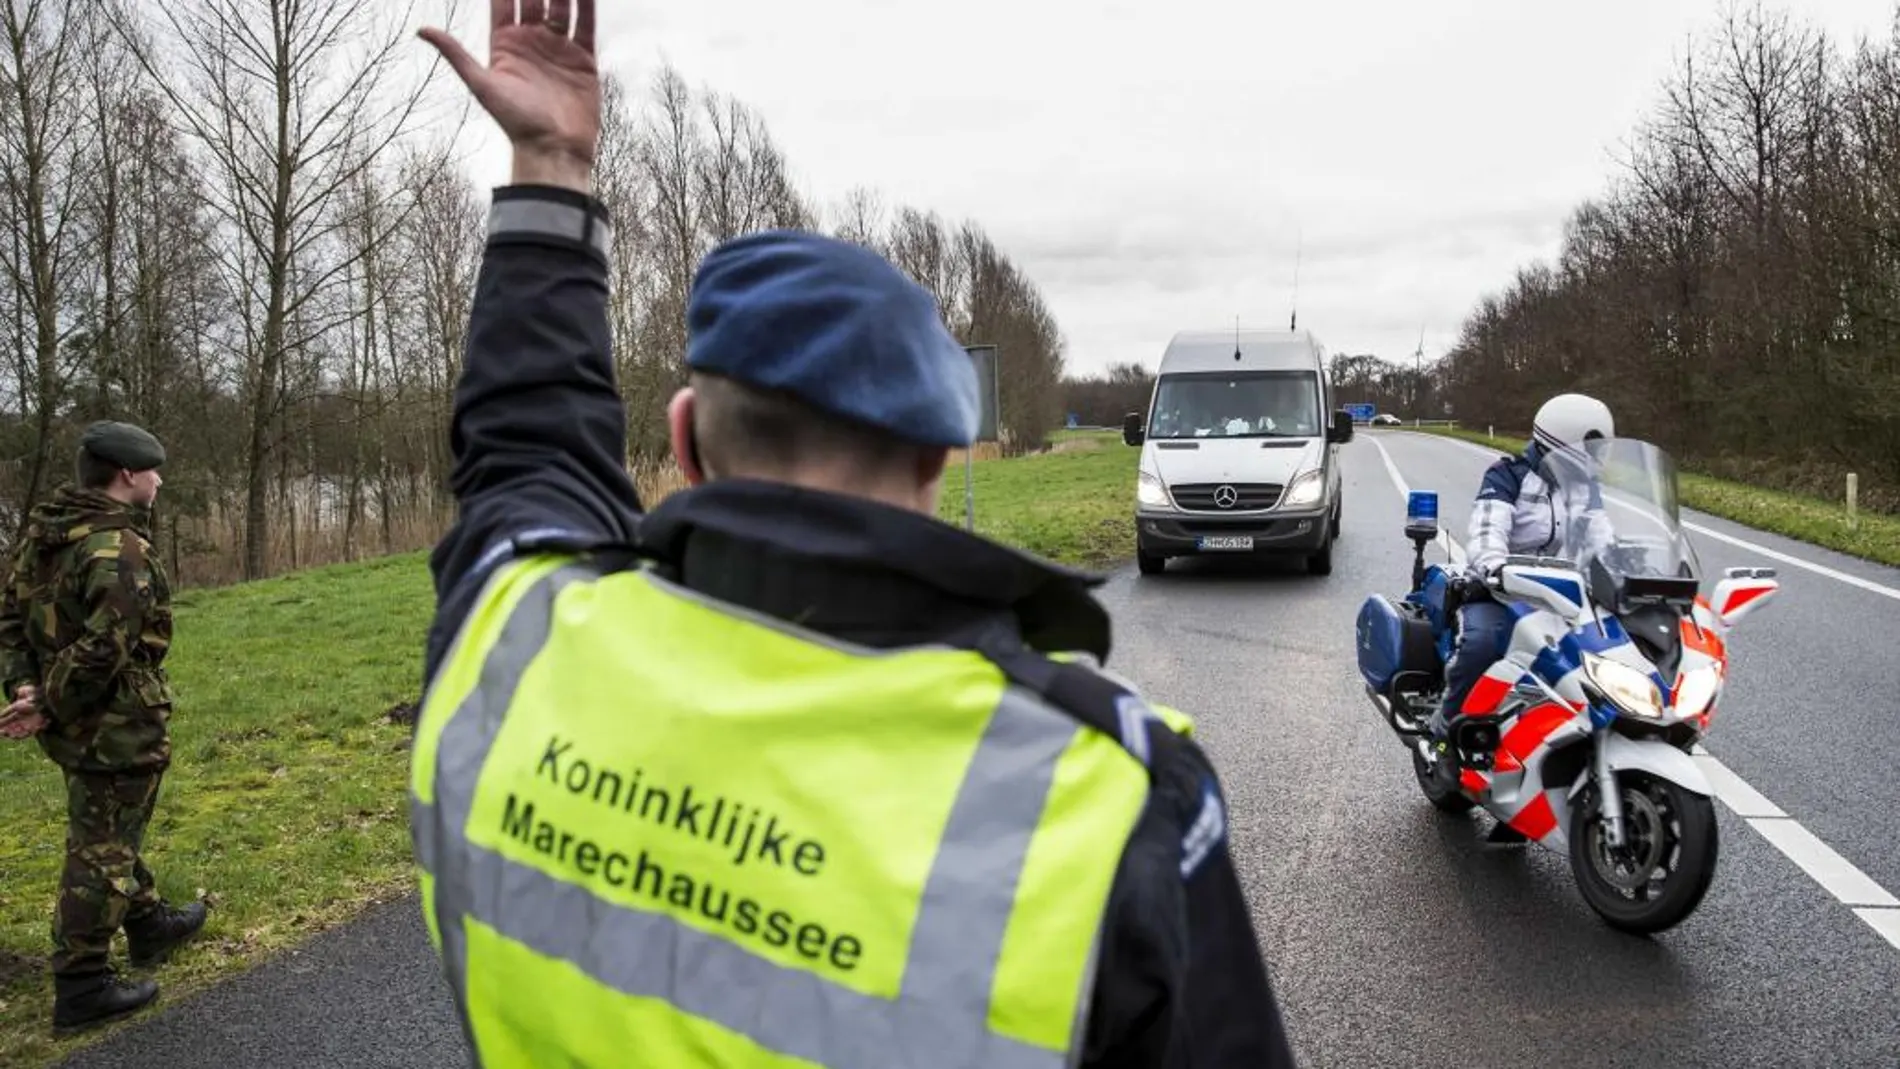 Controles de seguirdad en la localidad fronteriza con Alemania de De Lutte, Holanda hoy 8 de febrero de 2016.